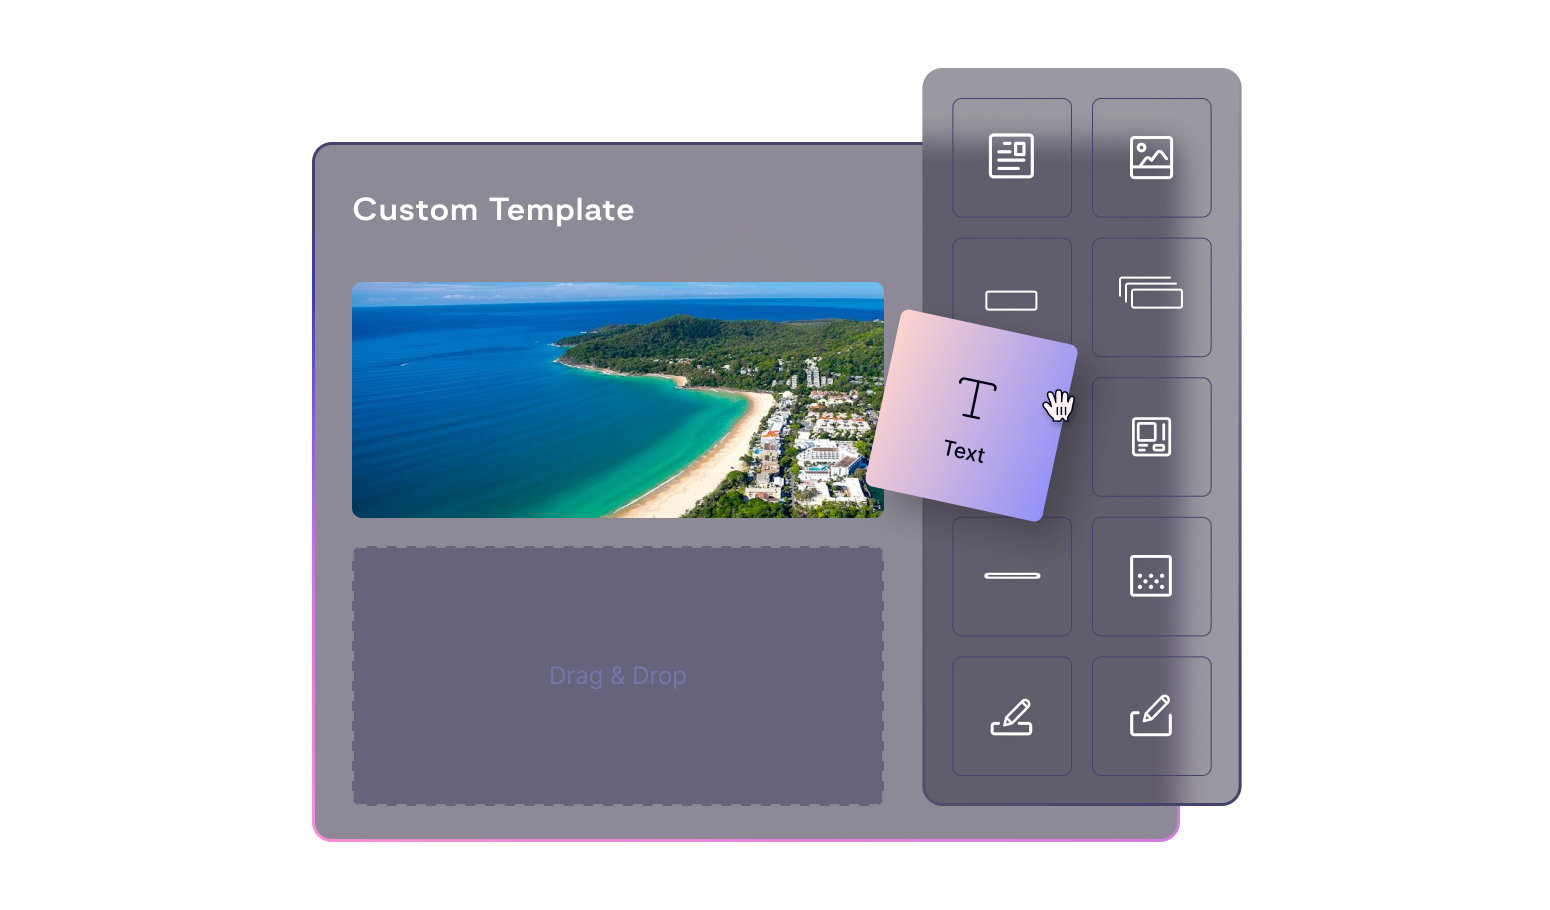 Mockup of custom template widgets